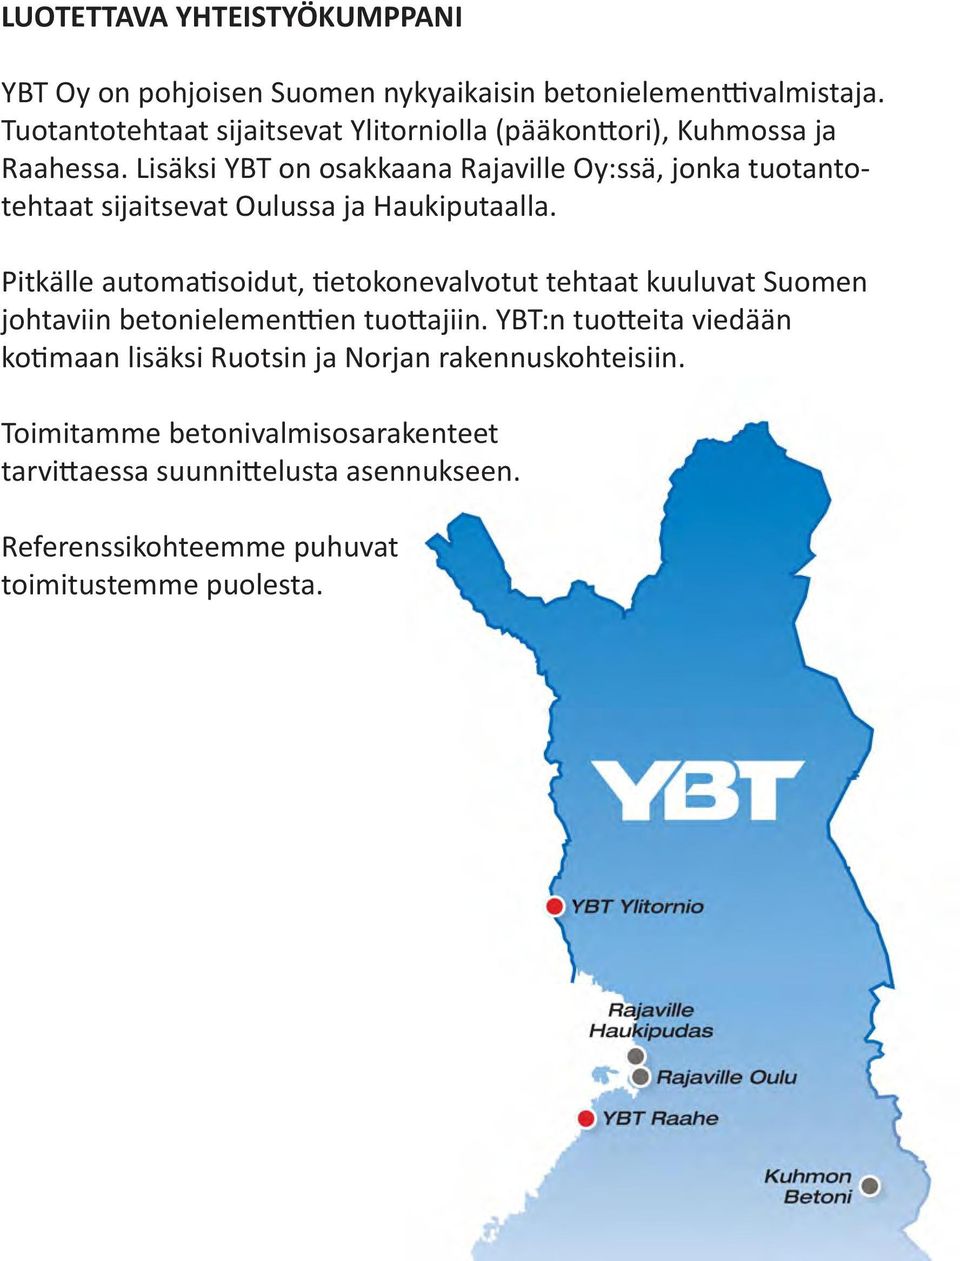 Lisäksi YBT on osakkaana Rajaville Oy:ssä, jonka tuotantotehtaat sijaitsevat Oulussa ja Haukiputaalla.